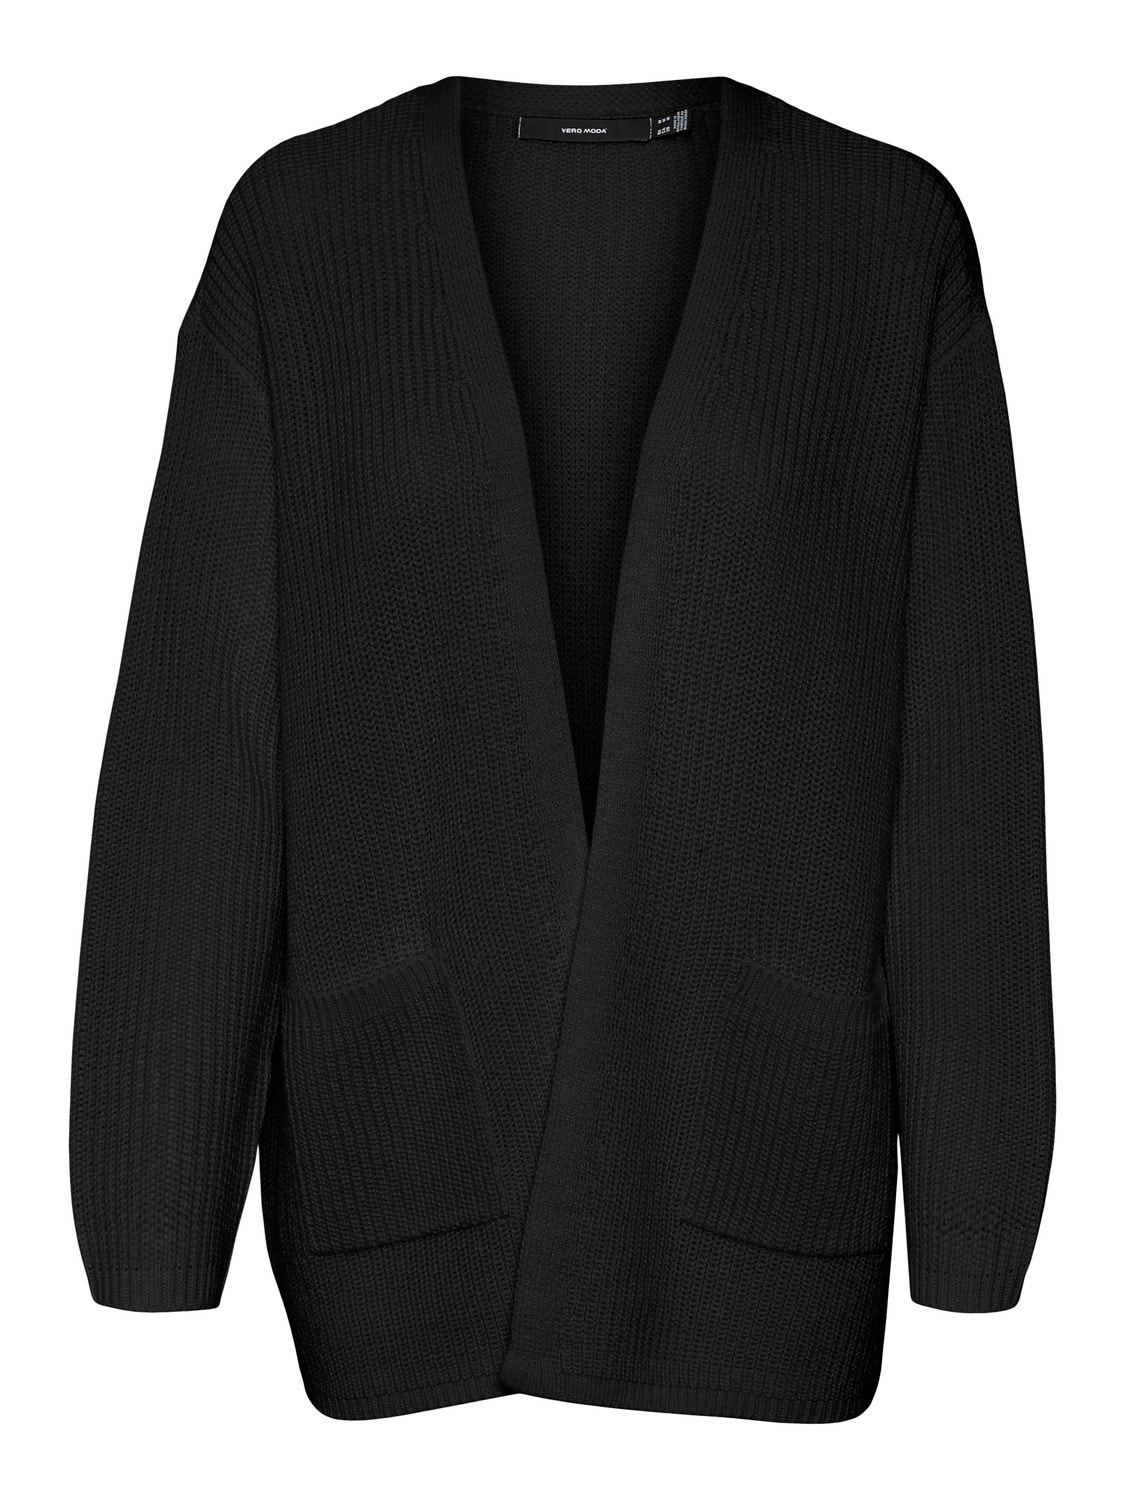 Vero Moda VMFABULOUS Knit Cardigan -Black - 10297806